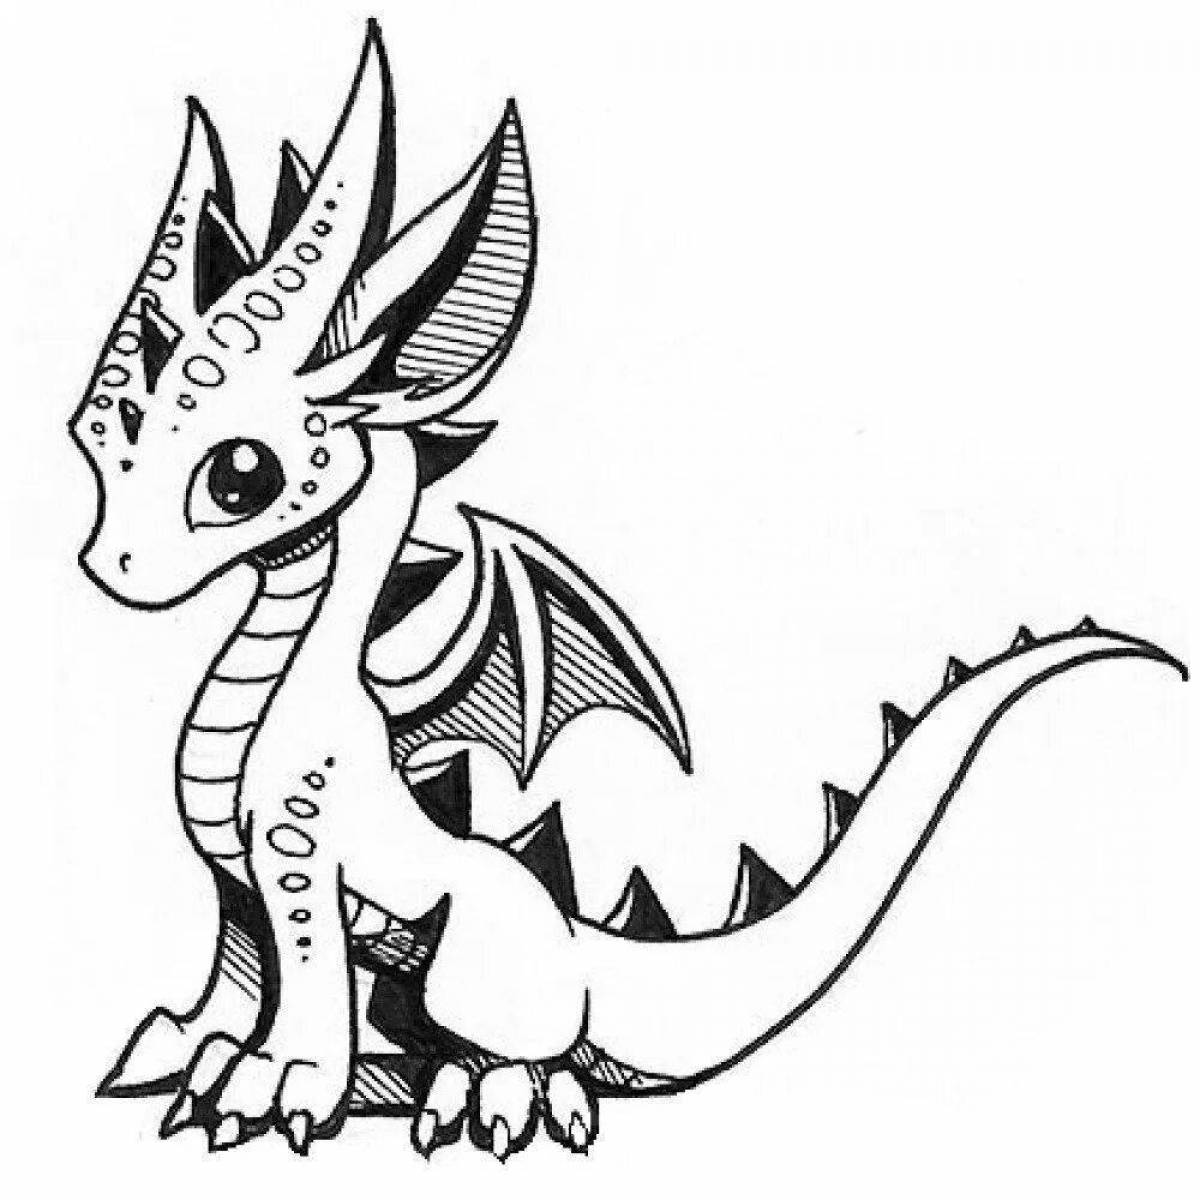 Раскраски драконов для детей - забавные сказочные драконы